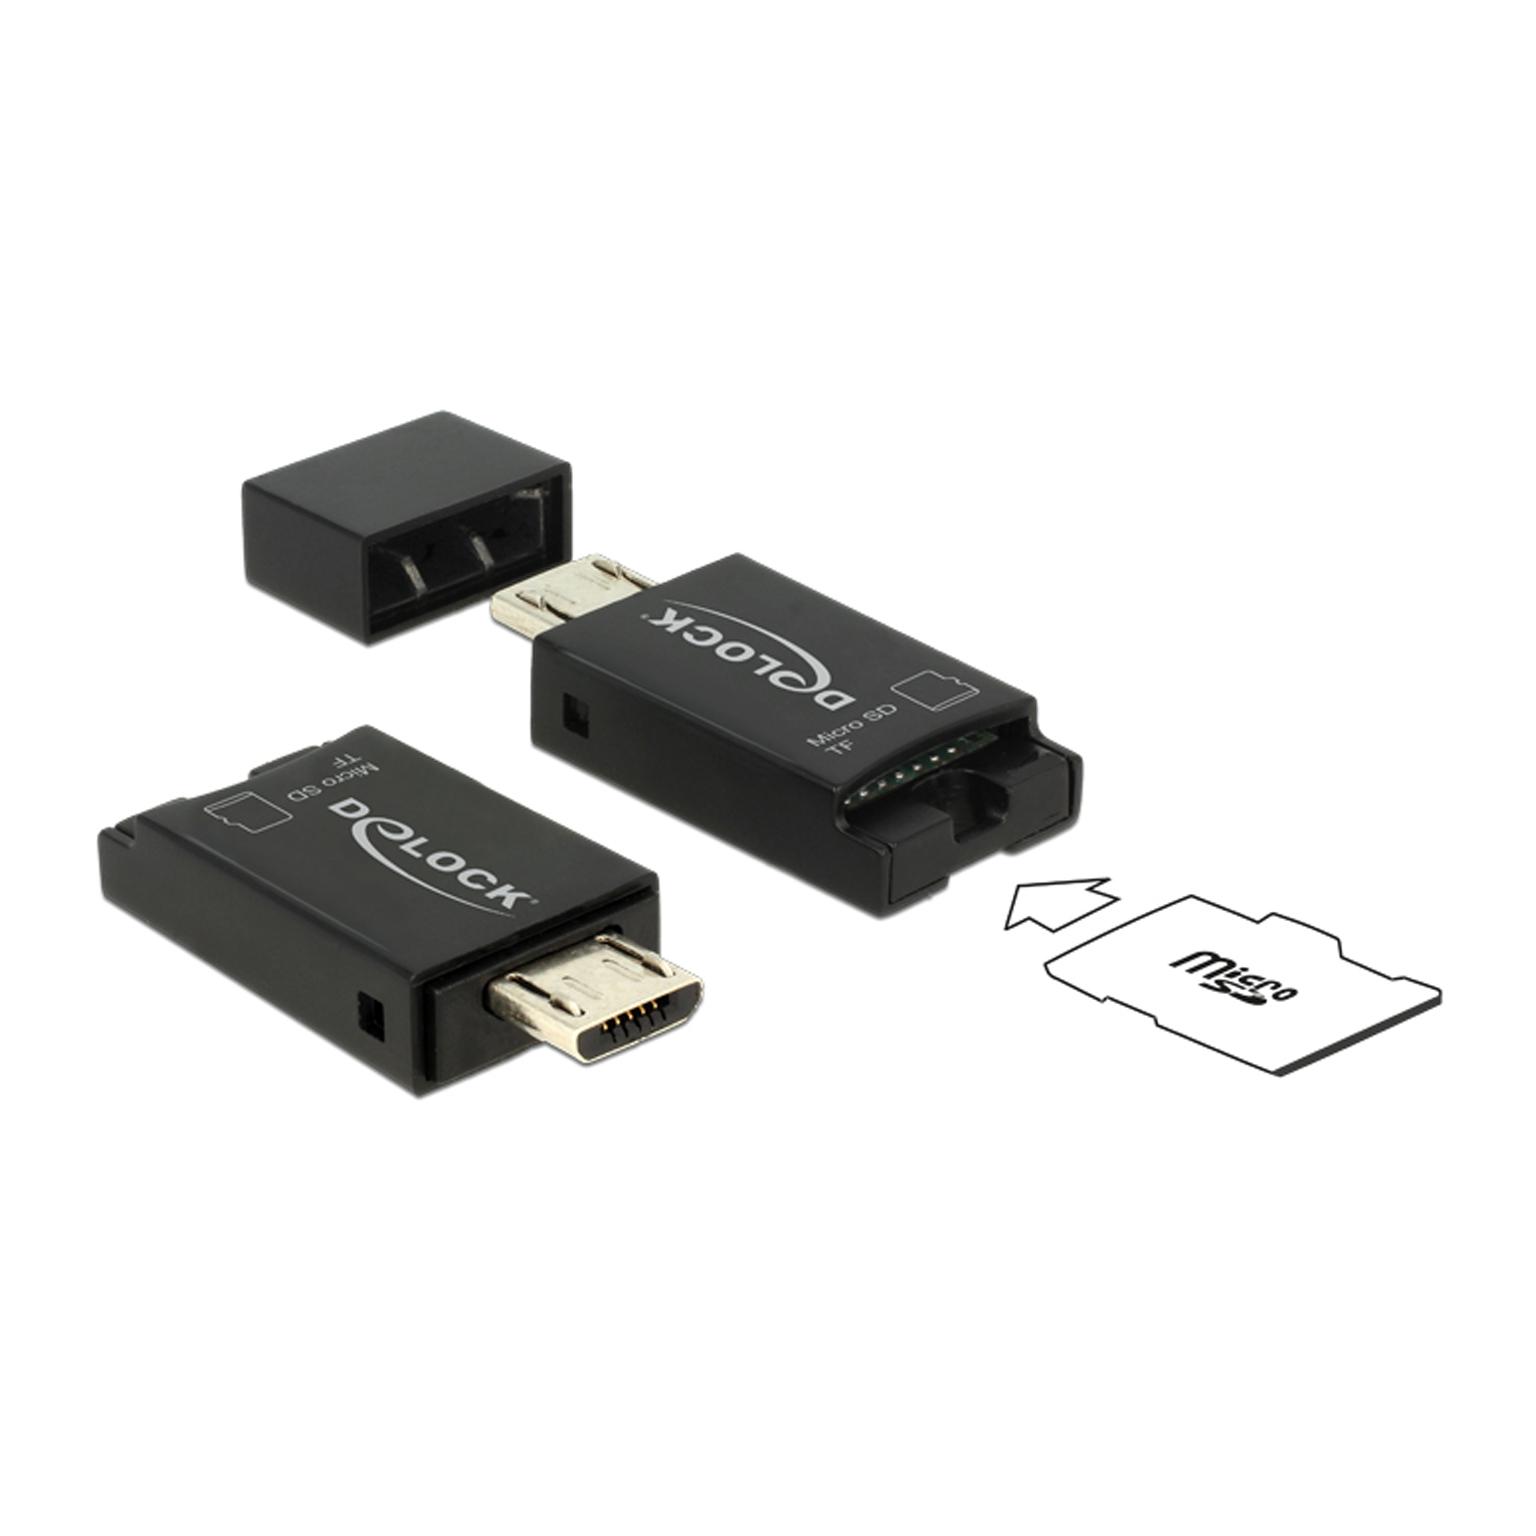 Delock Micro USB OTG Card Reader USB 2.0 Micro-B Stecker